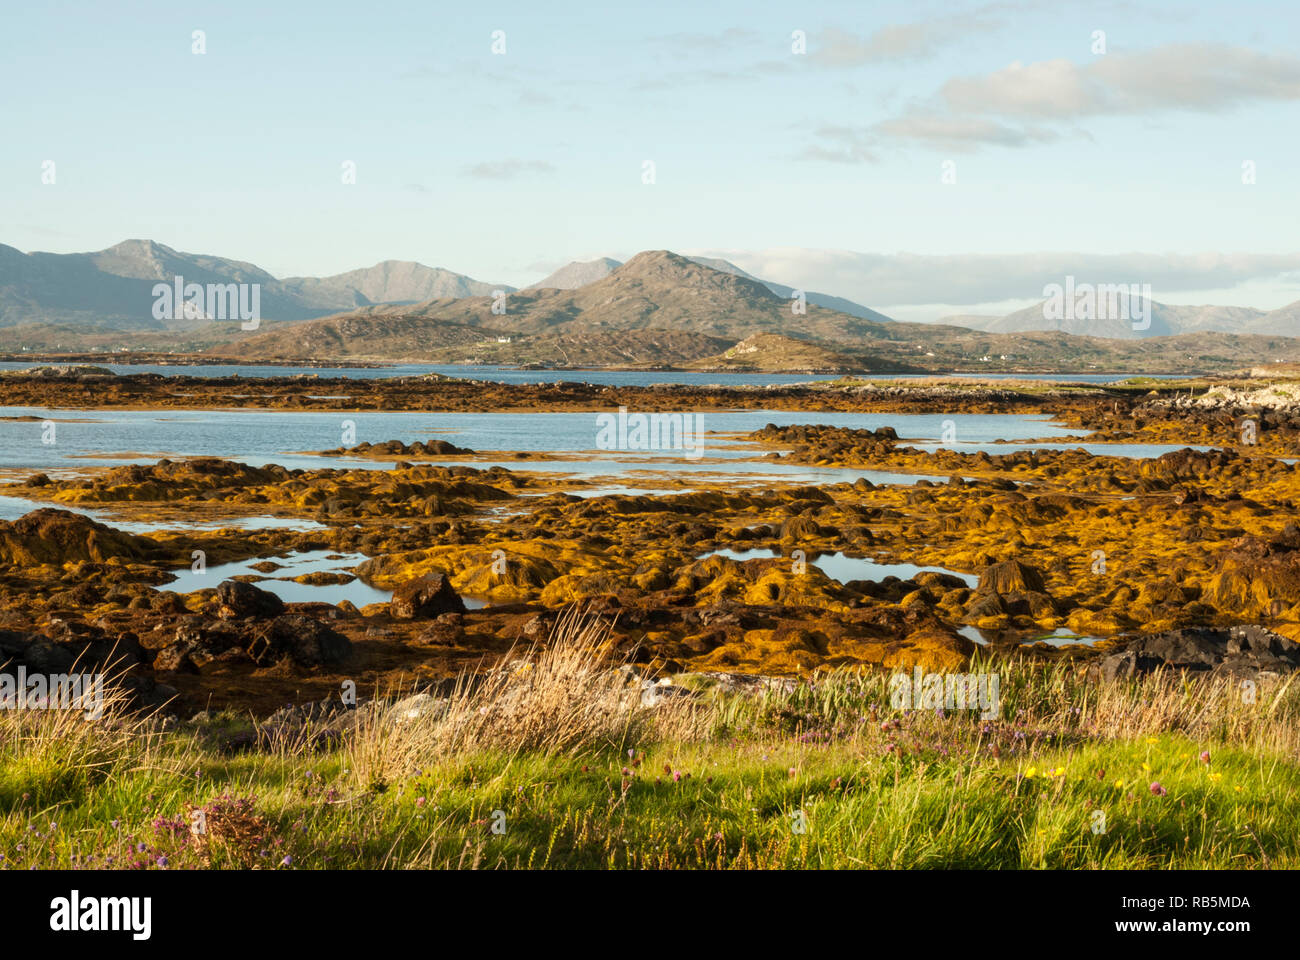 Une belle prise d'eau de mer bordée d'algues orange ; en arrière-plan l'Beanna Beola gamme de montagne du Parc National du Connemara, en Irlande dans le soleil. Banque D'Images